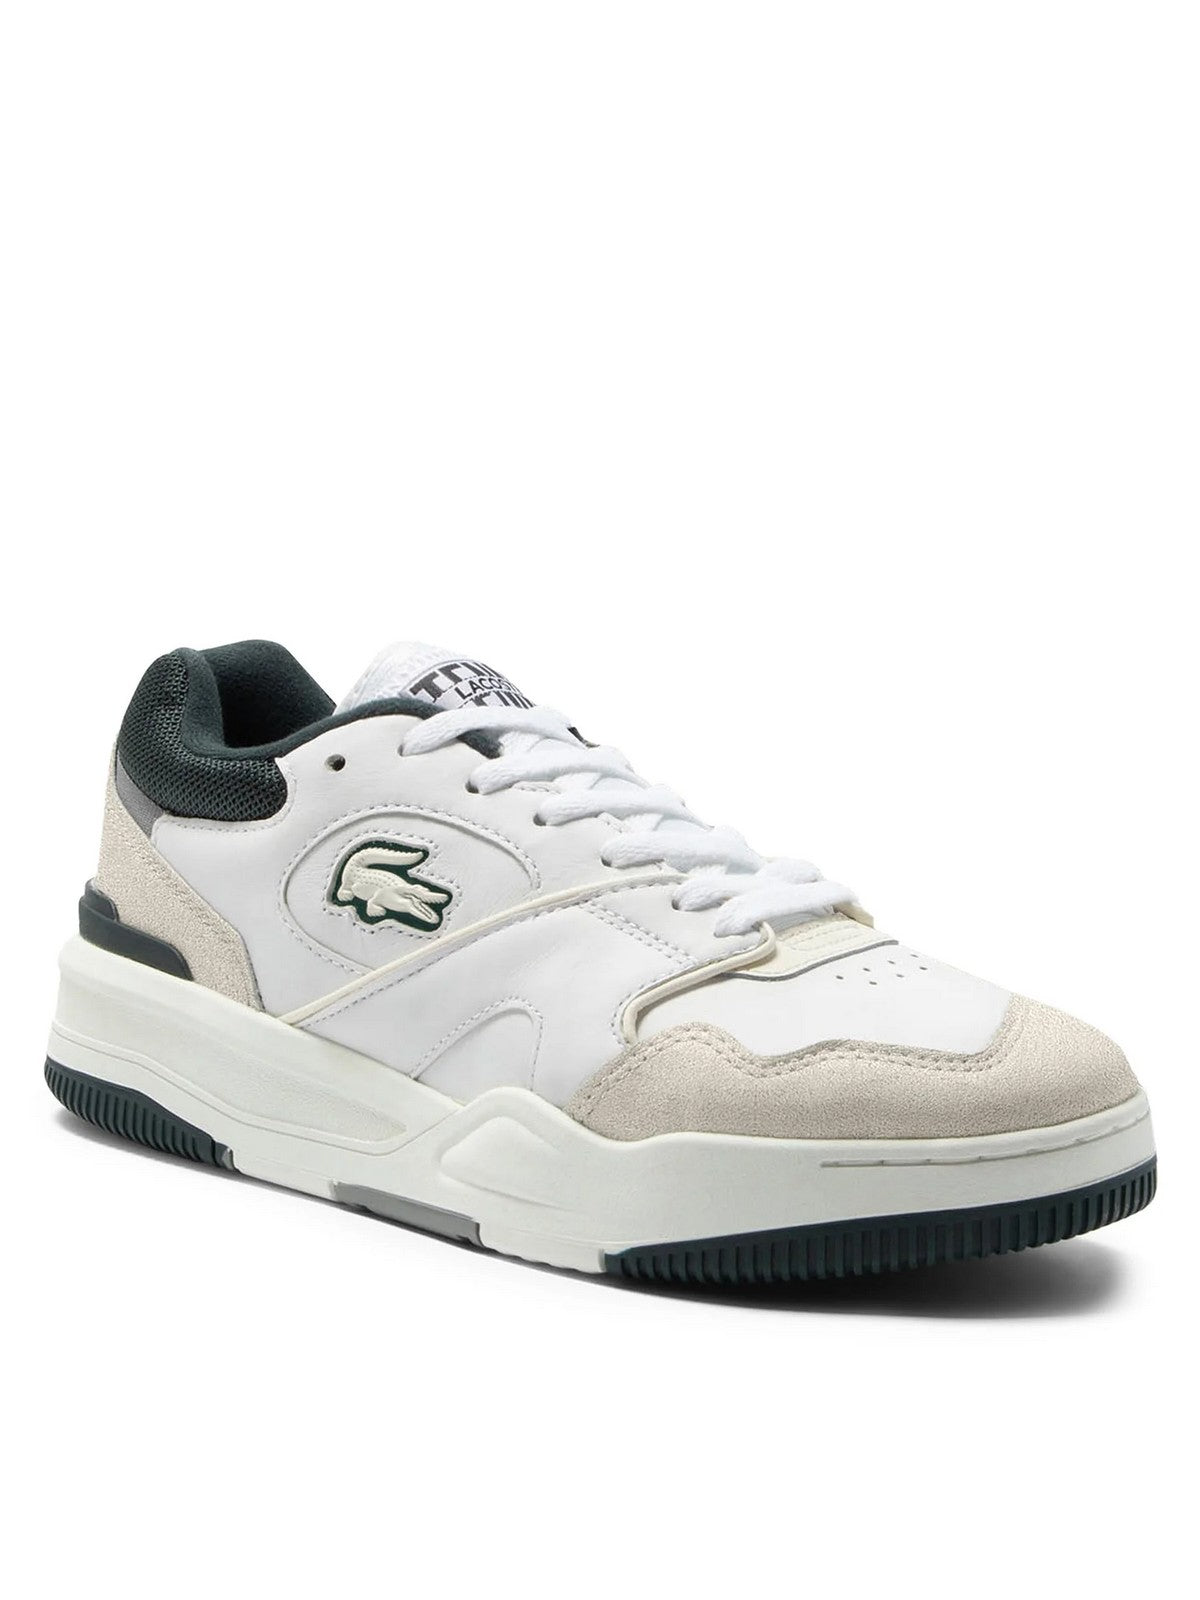 LACOSTE Sneaker Uomo  746SMA0088 1R5 Bianco